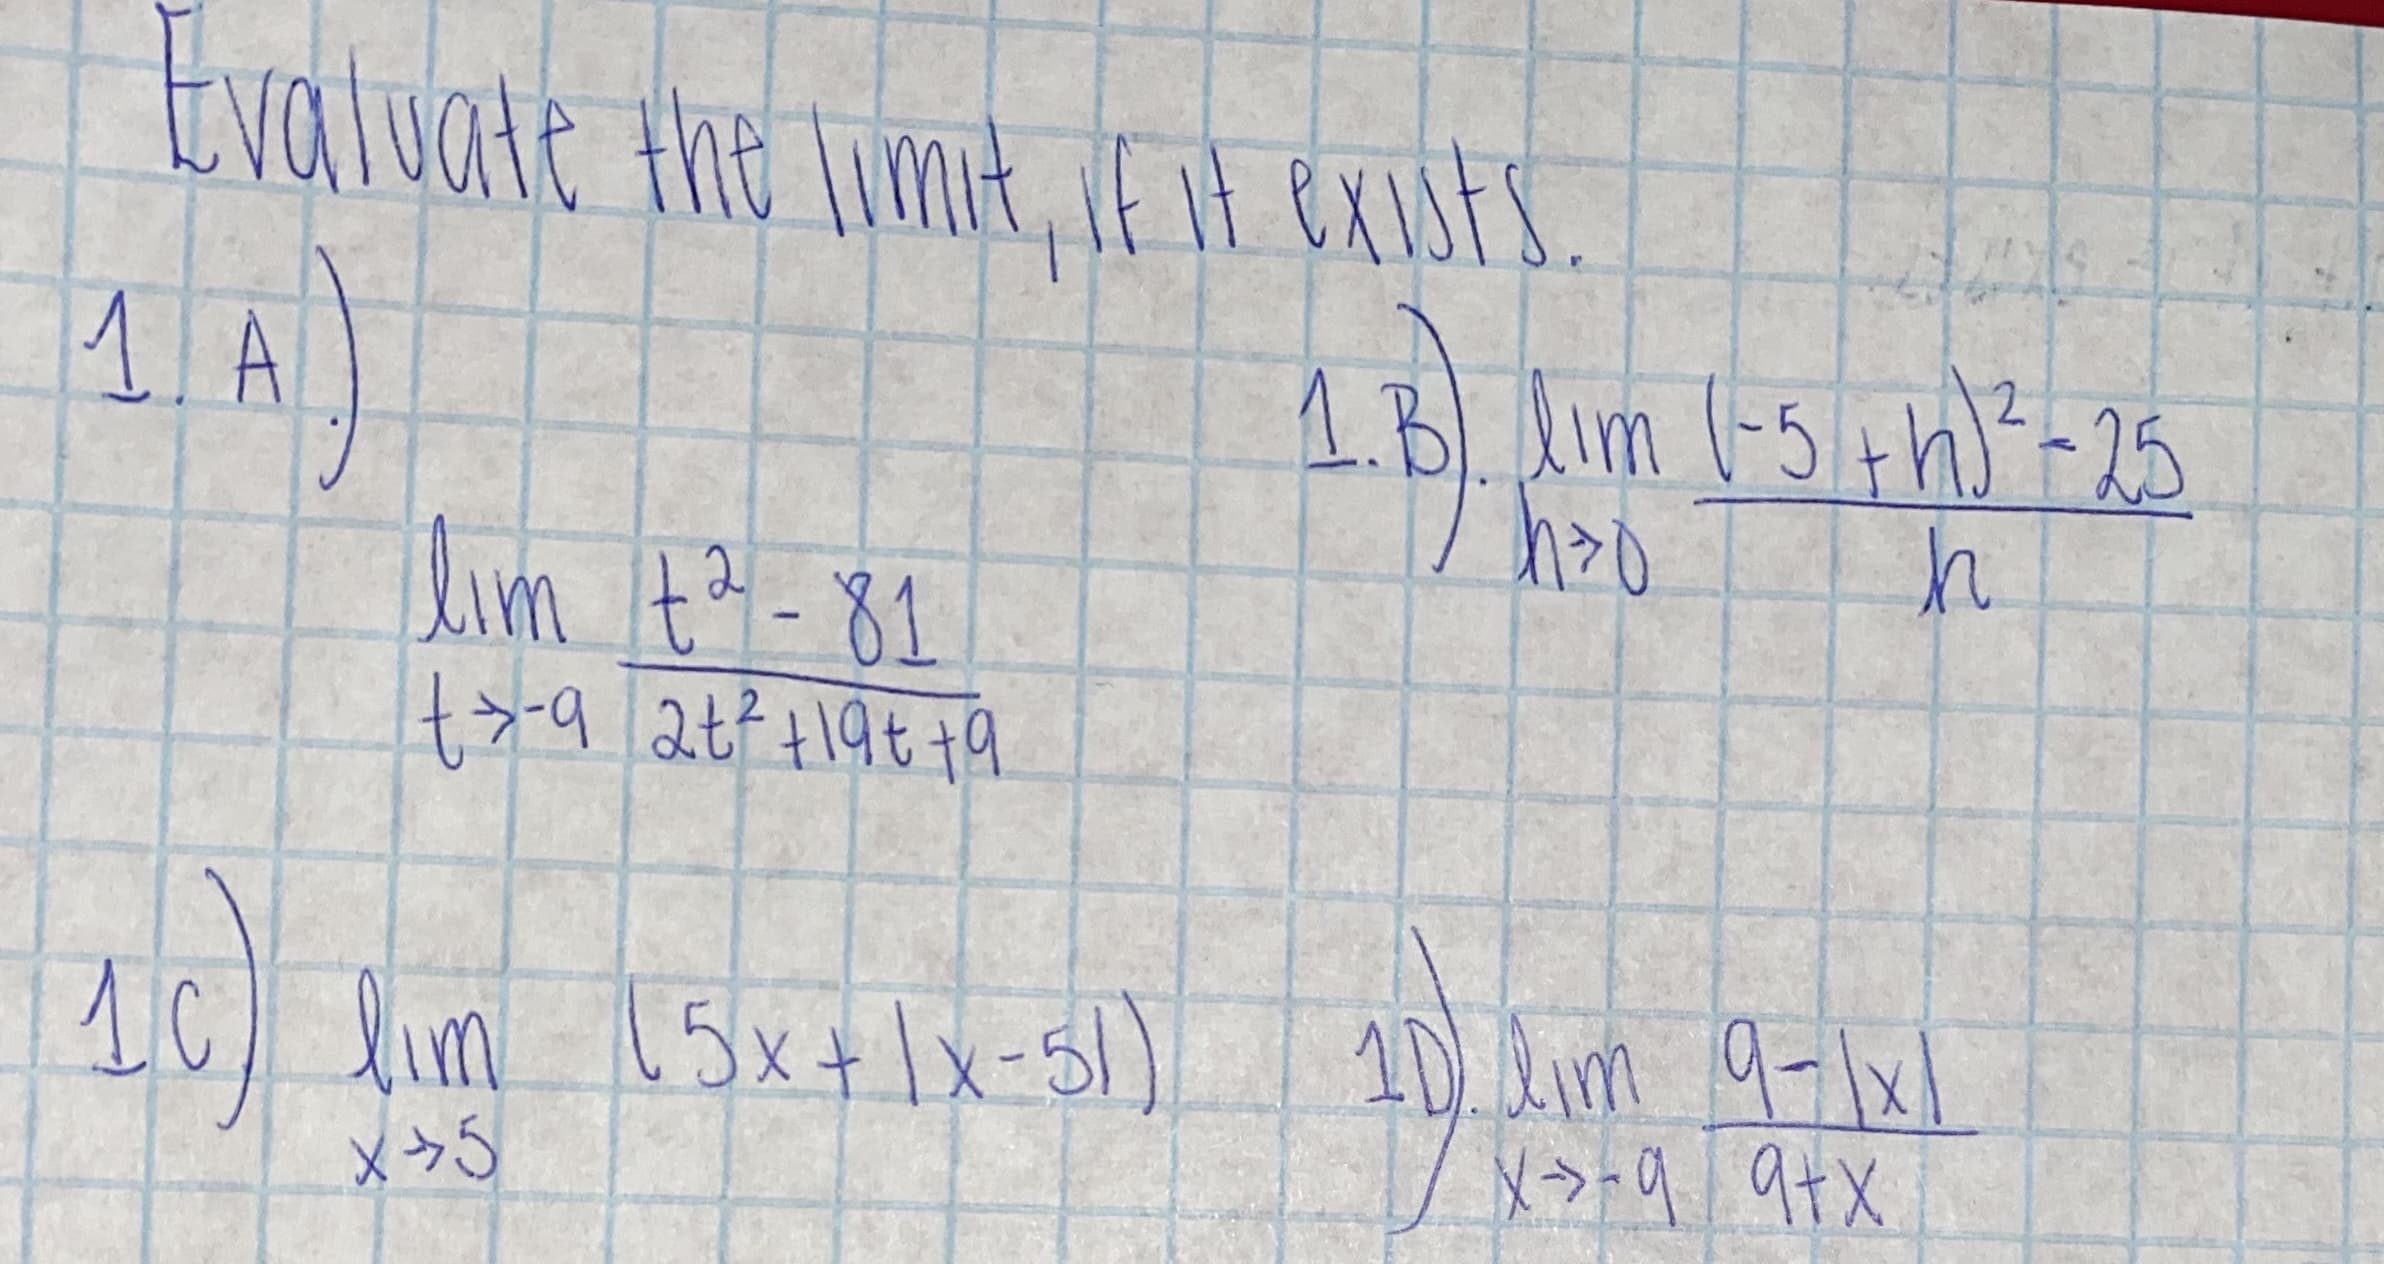 Evaluate the Timit, E iH exists.
1.B. Alm (-5+h?-25
Aim ta-81
2.
10) lim 15x+lx-5)
10.lim
9-1x1
X>+q 9+x
